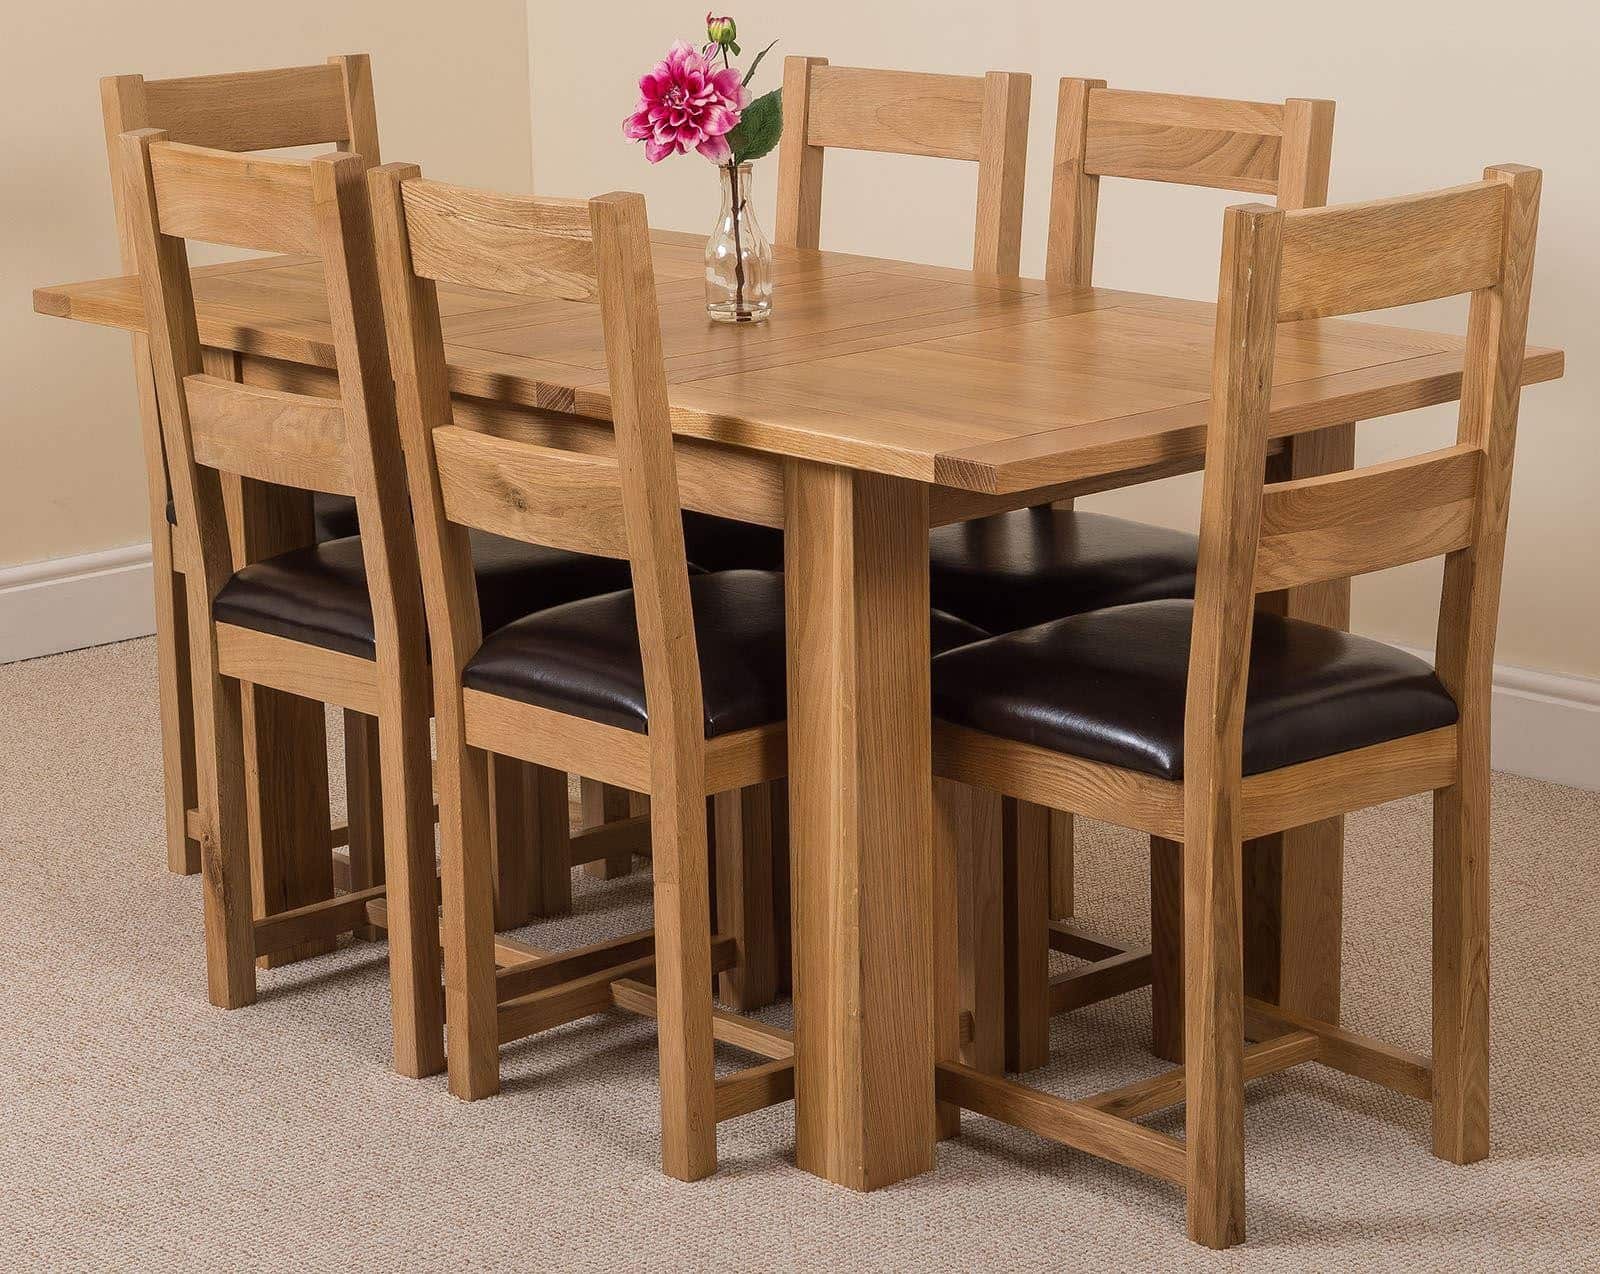 Thiết kế của bàn ăn bằng gỗ sồi vô cùng sang trọng tạo nên sự tiện nghi